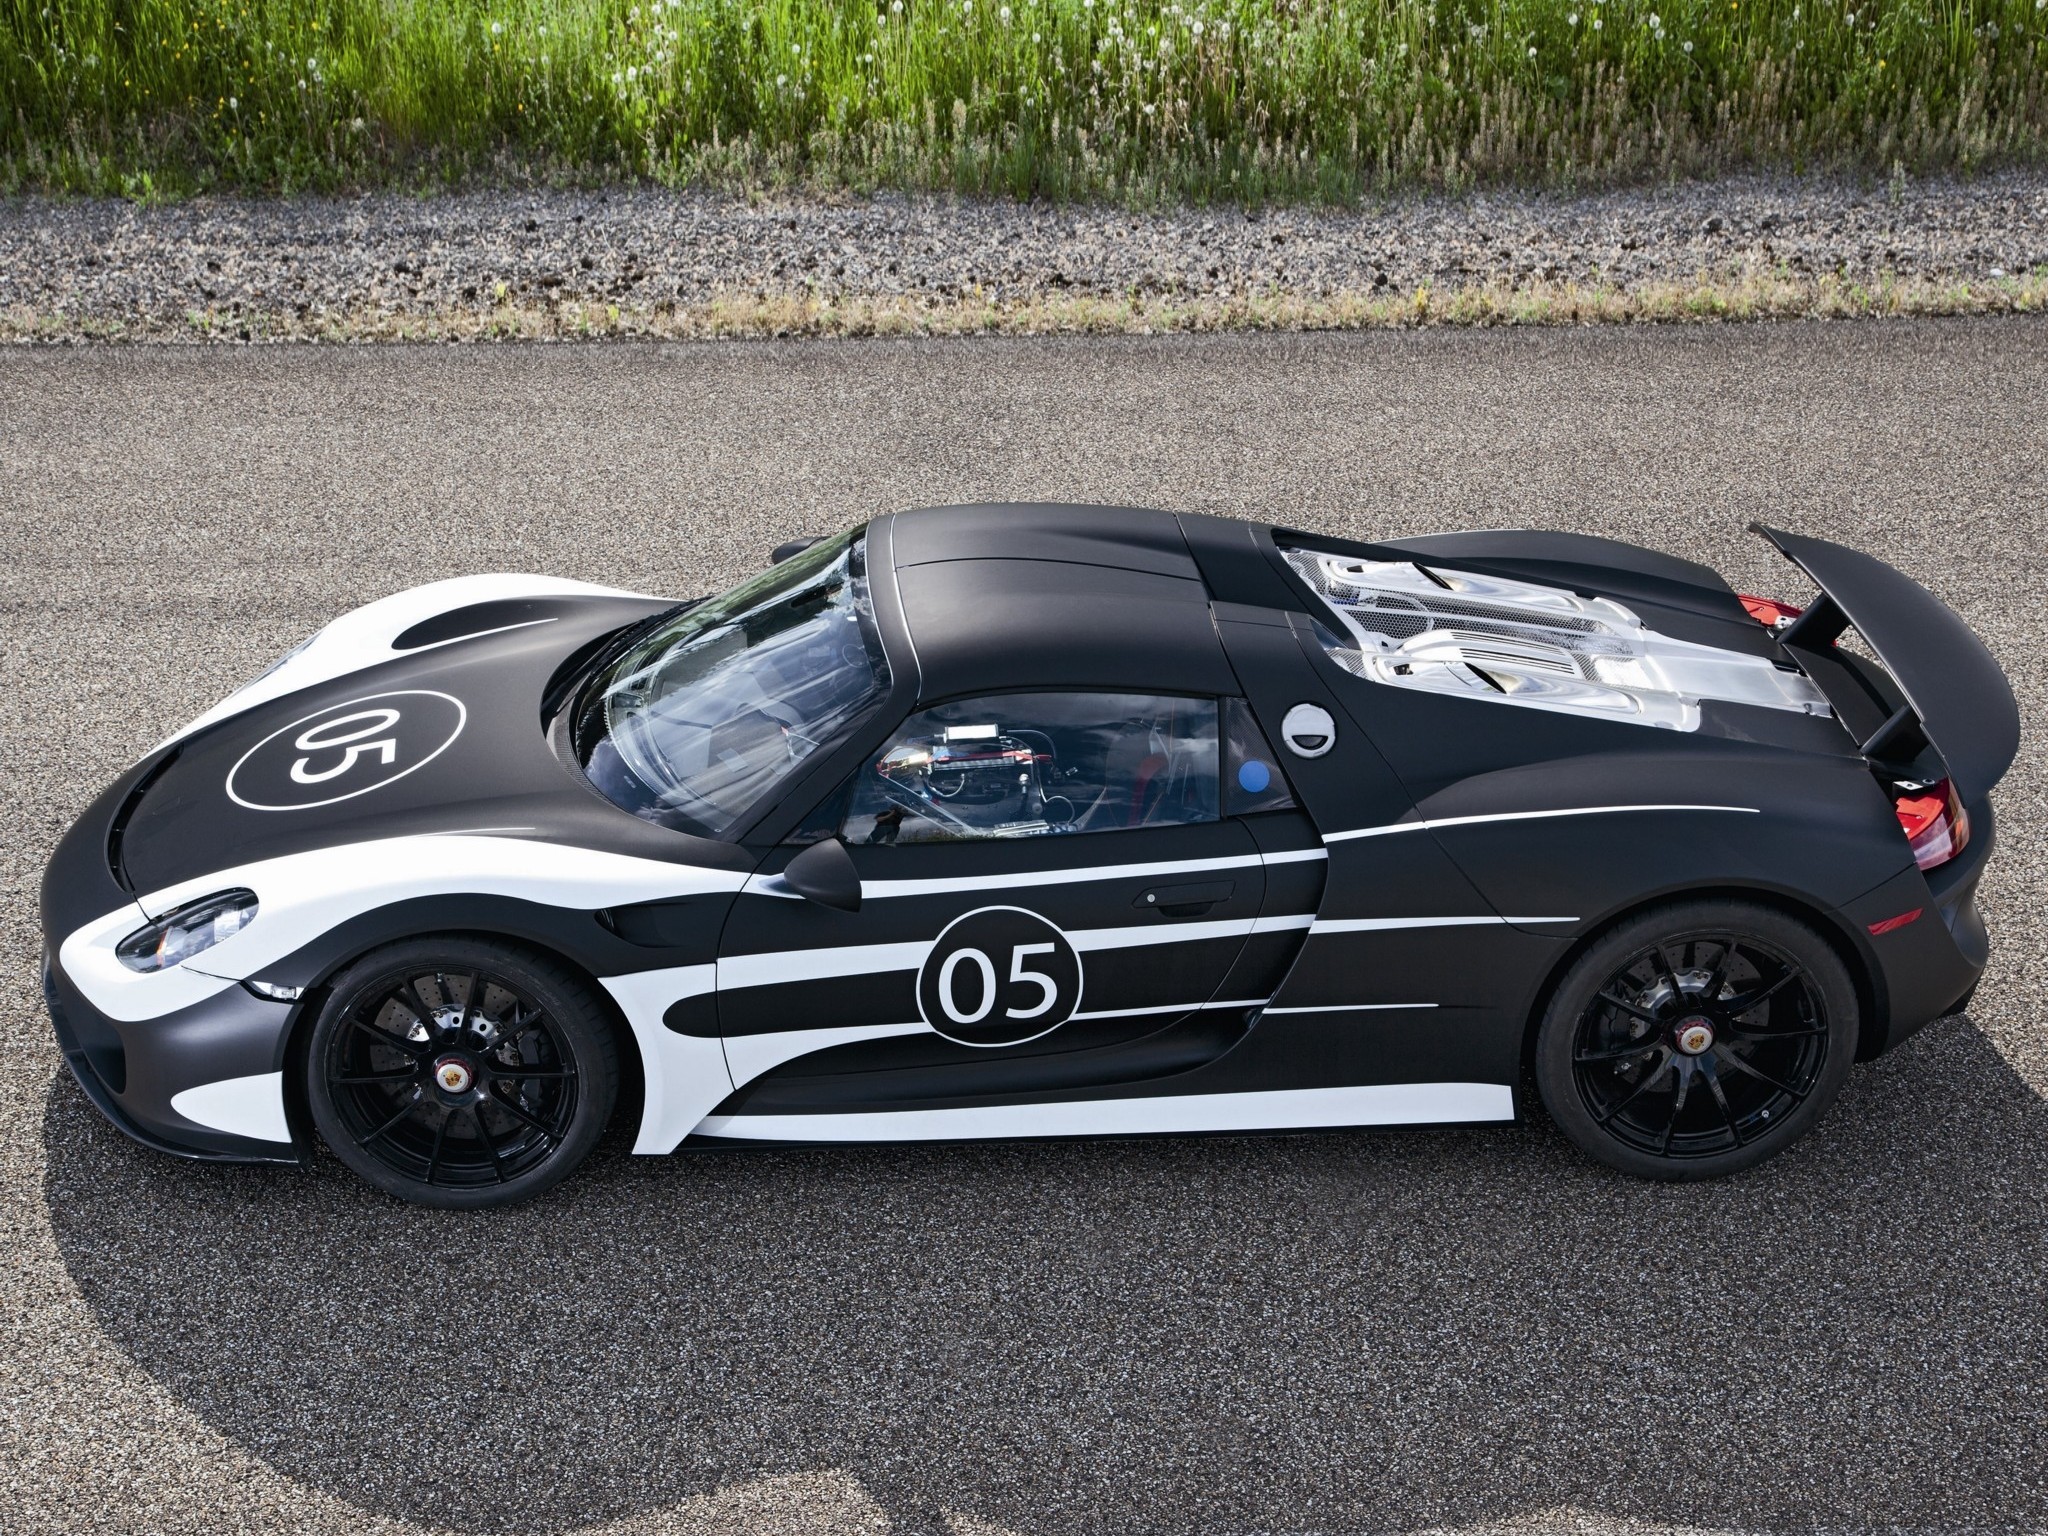 2012, Porsche, 918, Spyder, Prototype, Supercar, Supercar, Race, Racing, Fw Wallpaper